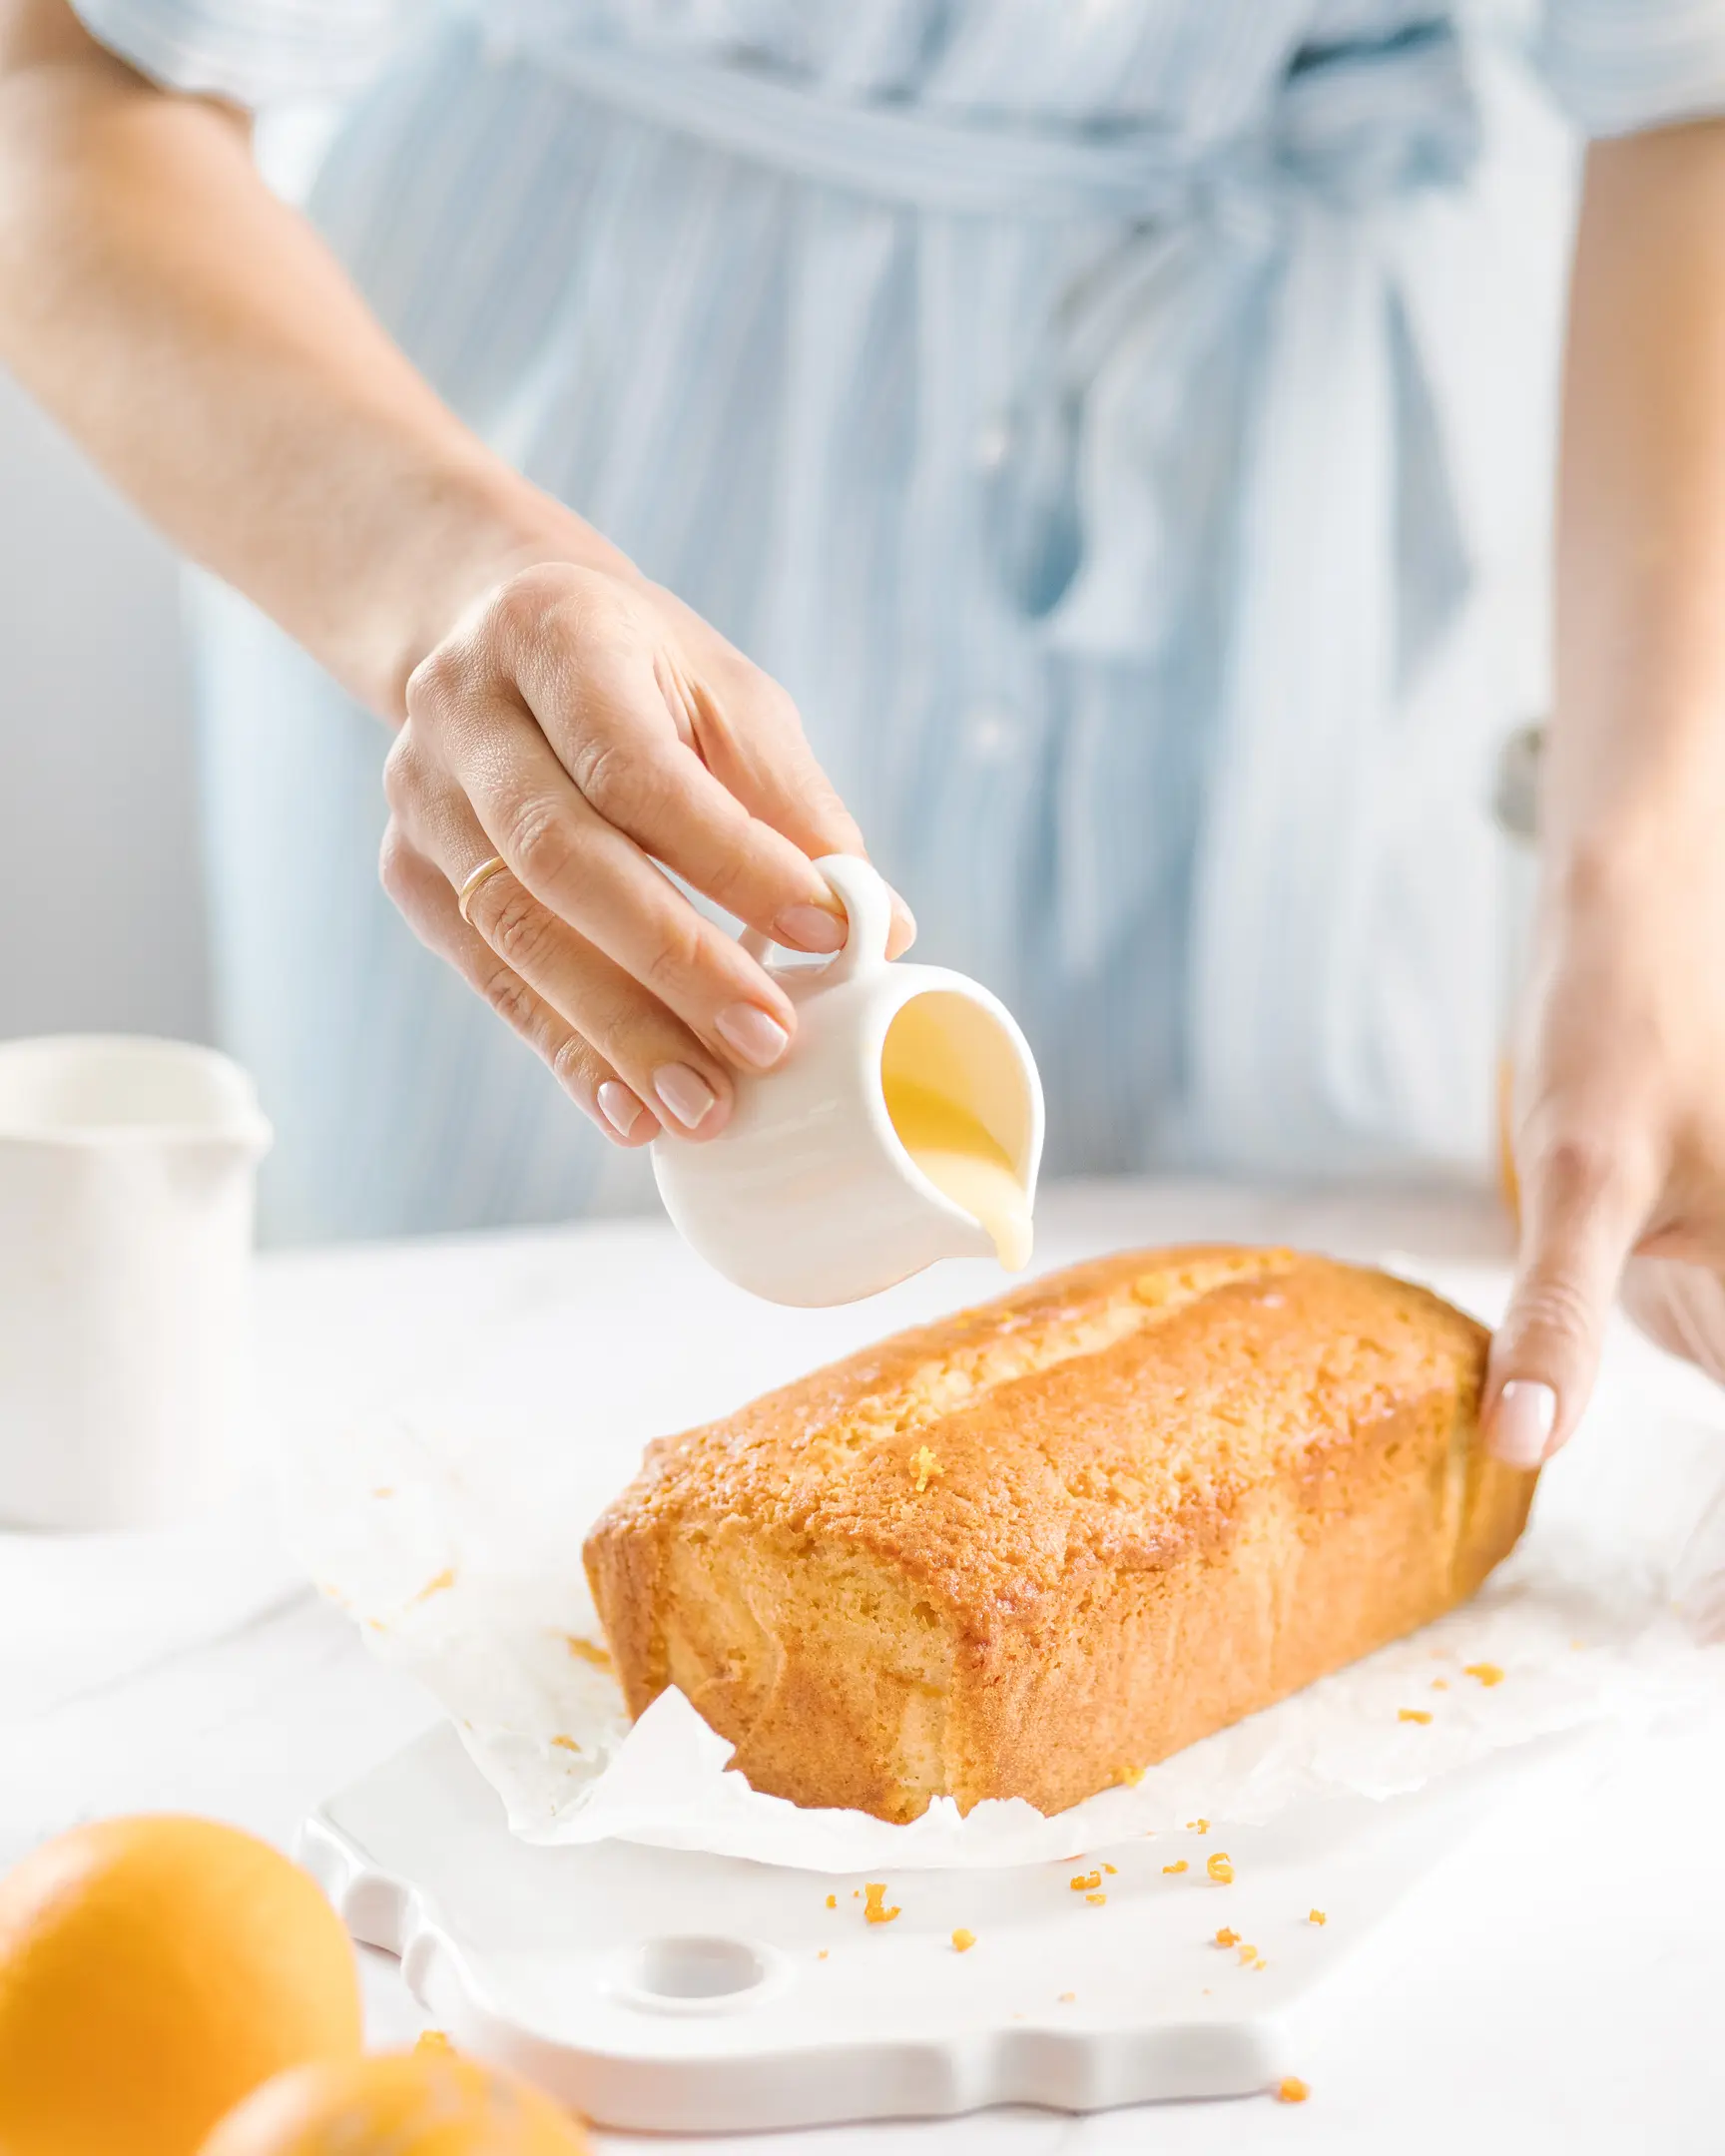 Жена излива портокалова глазура върху кекс. Жена в синя рокля излива портокалова глазура върху кекс. Кексът стои върху керамична поставка. На преден план се виждат портокали, което подчертава, че кексът е направен на базата на портокали.